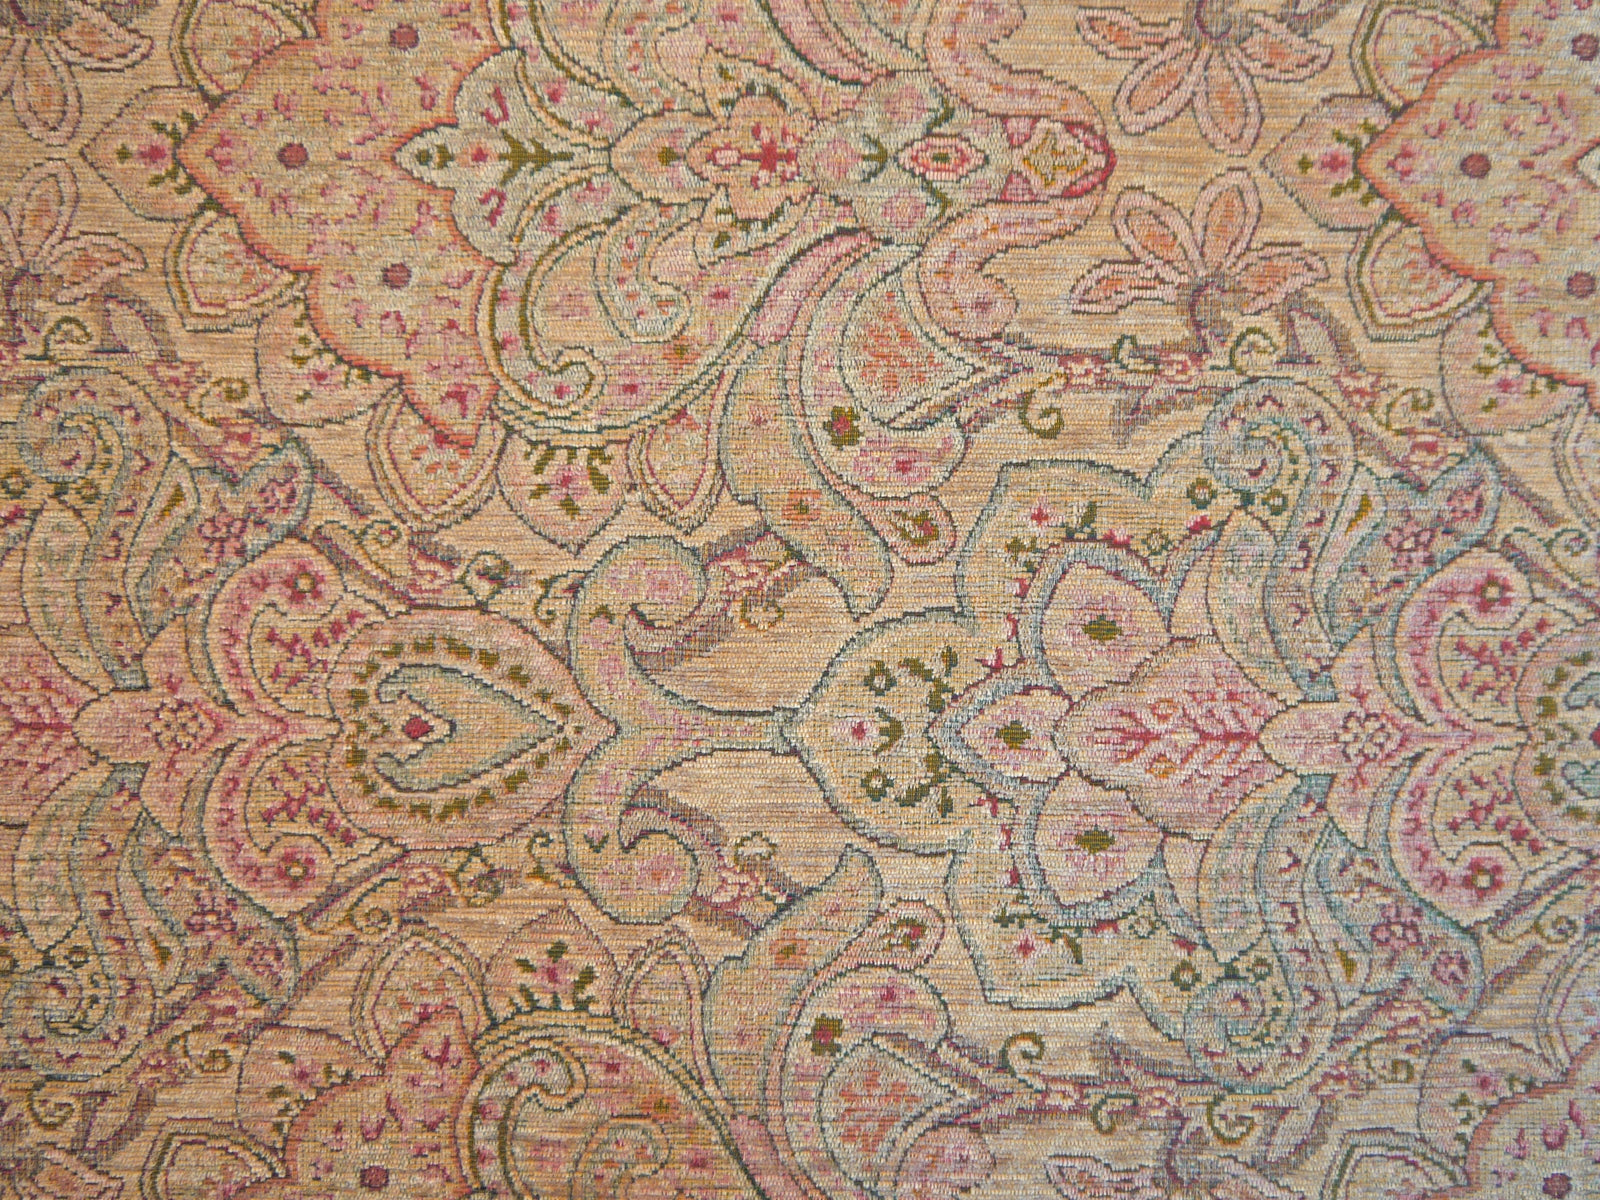 Imperiale Fabric Samples - Rydan Interiors